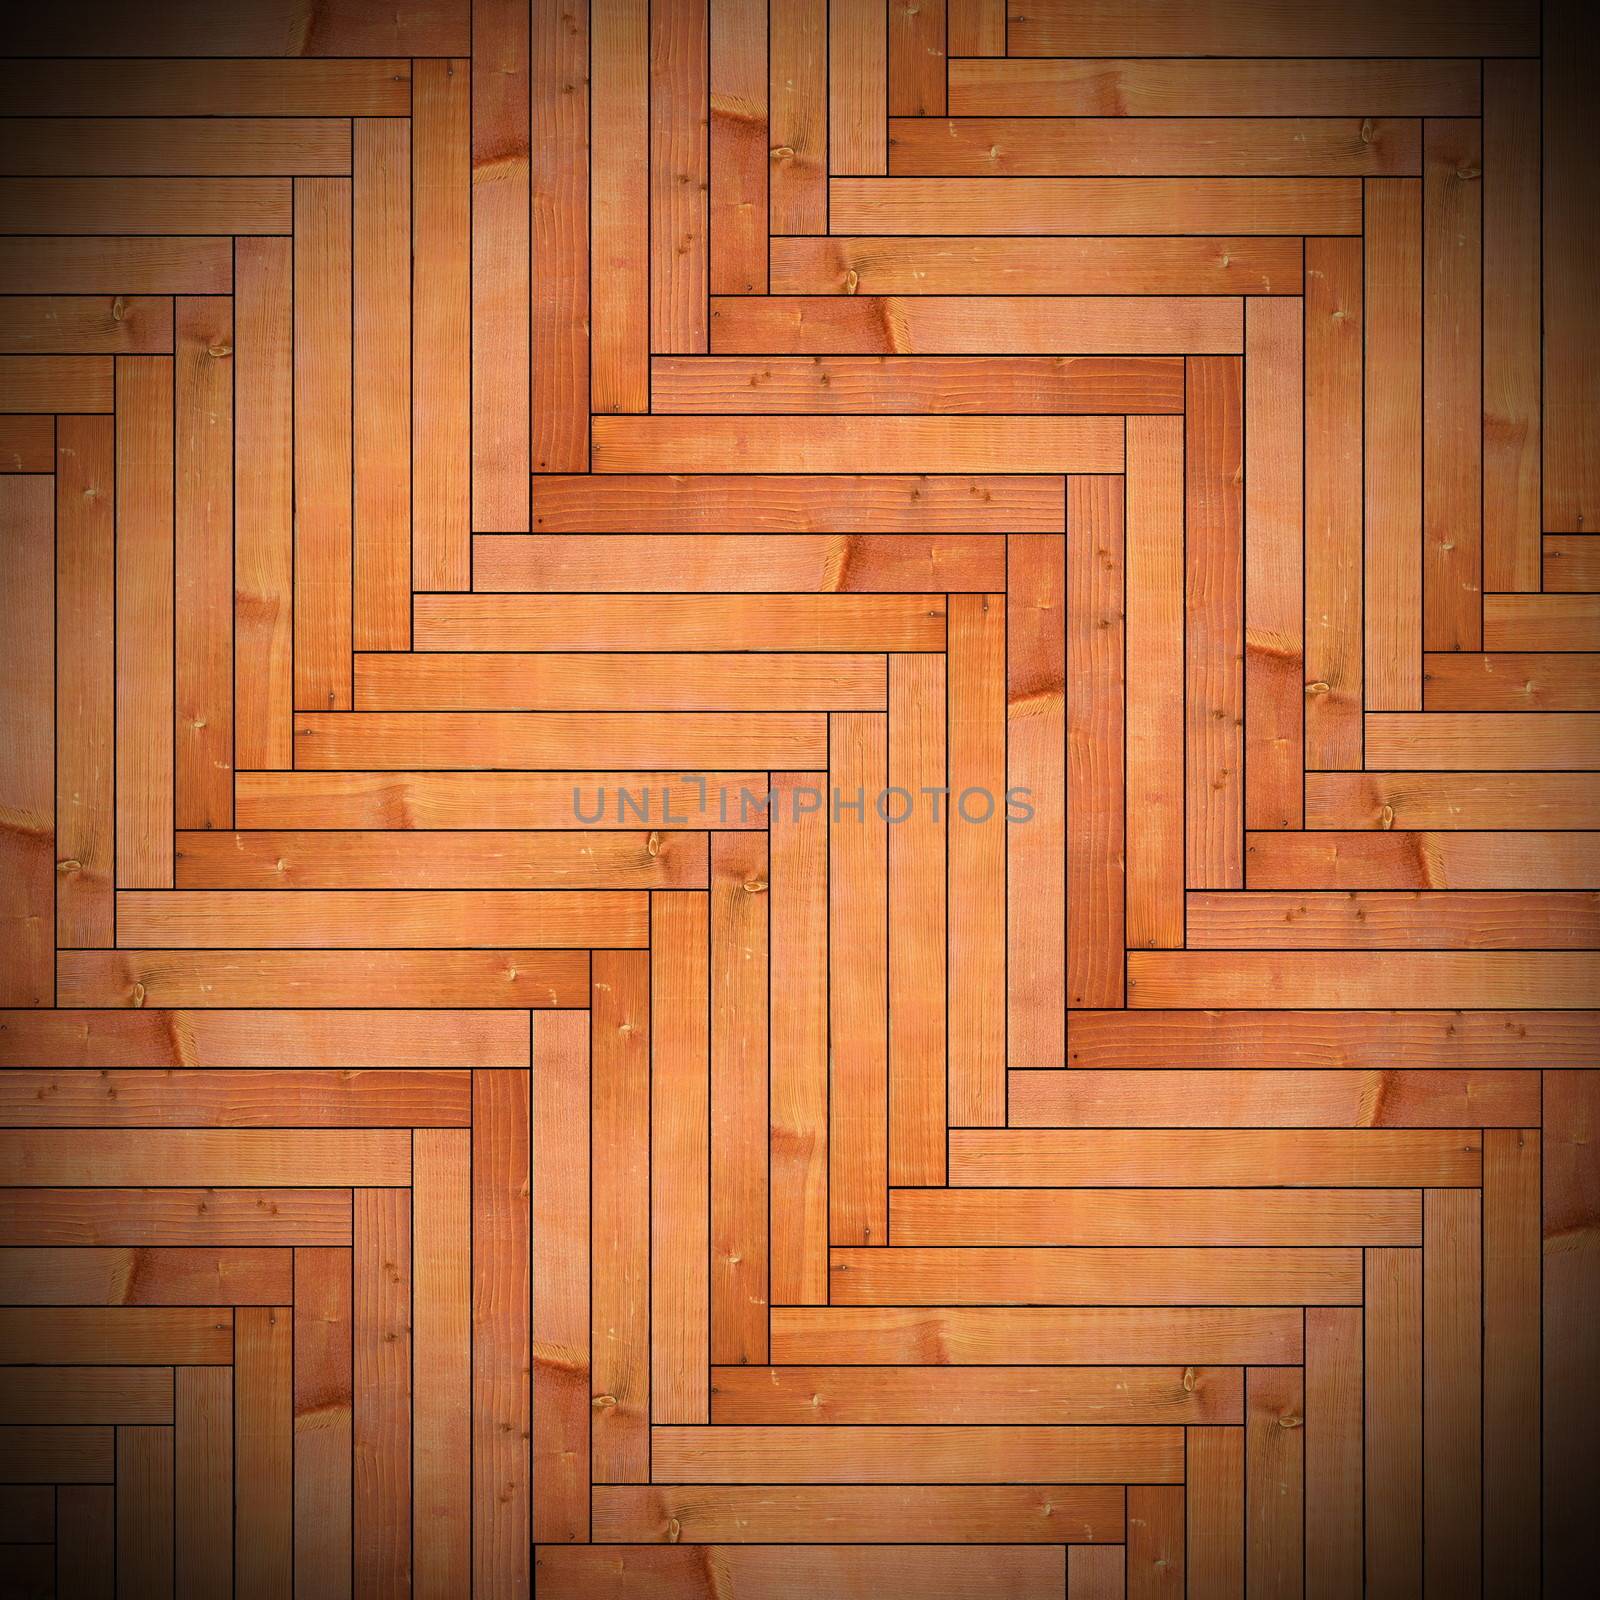 wood tiles on floor parquet  texture 